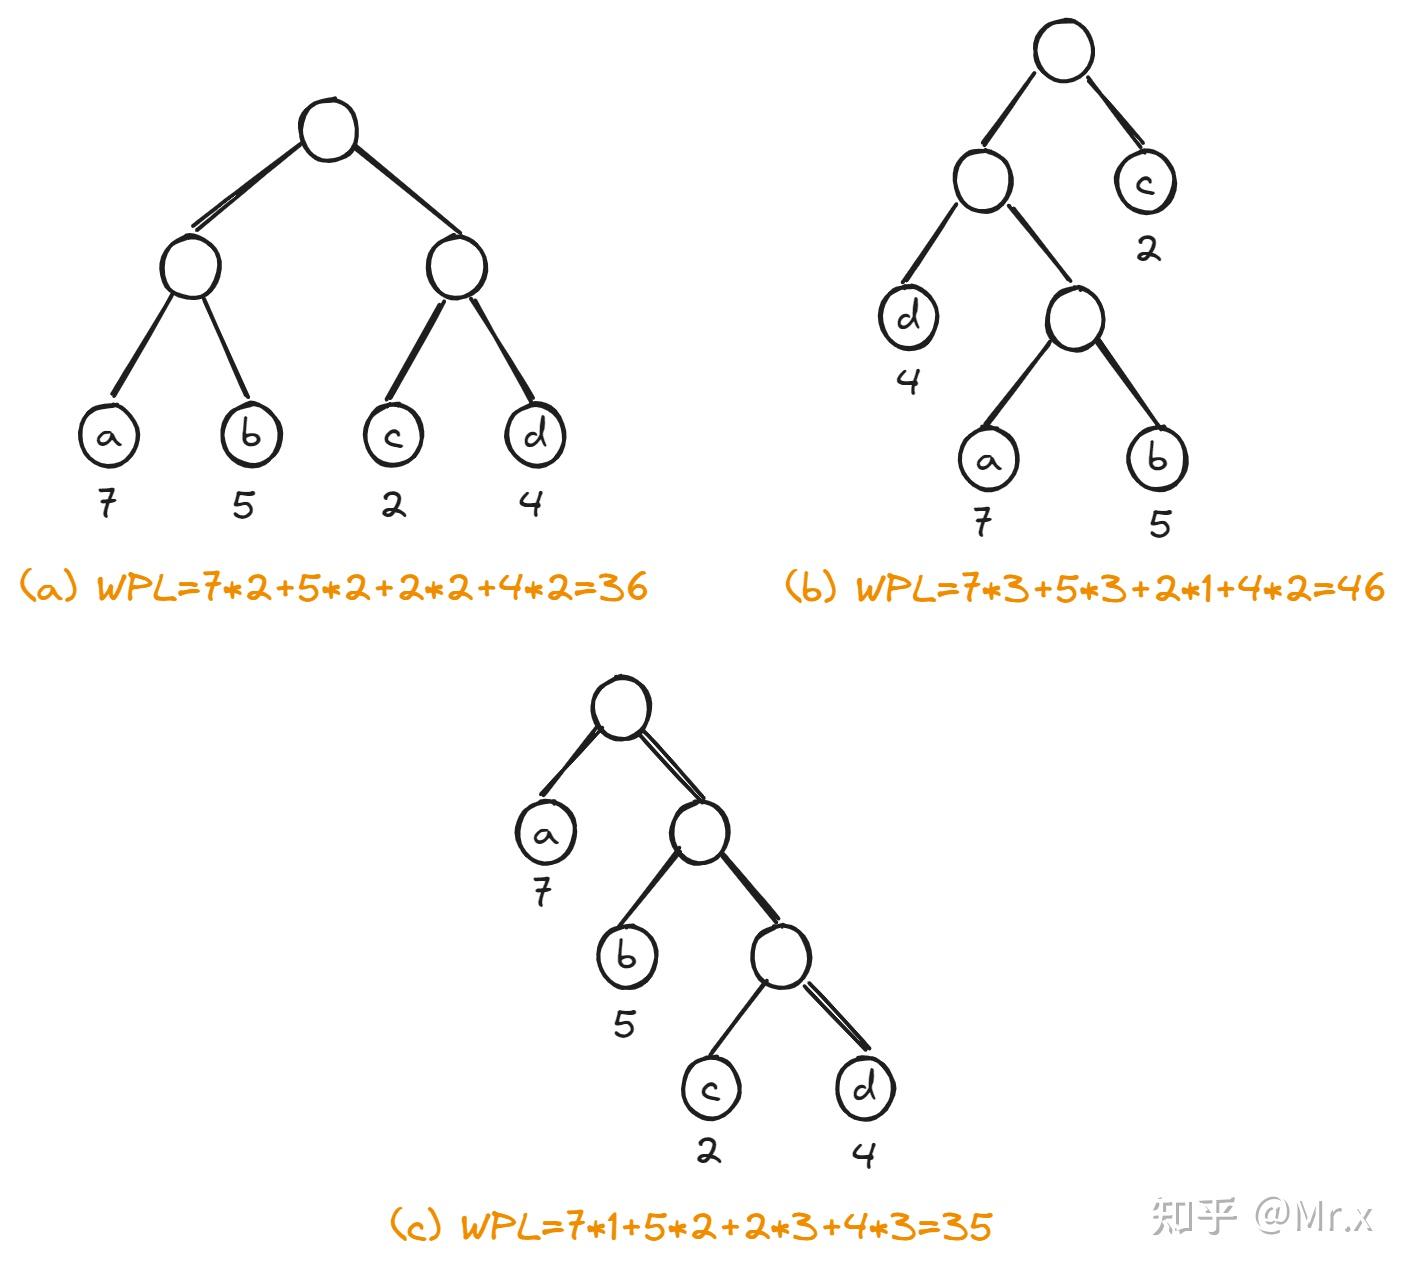 如何画出哈夫曼树的生成过程_如何画出哈夫曼树的生成过程图